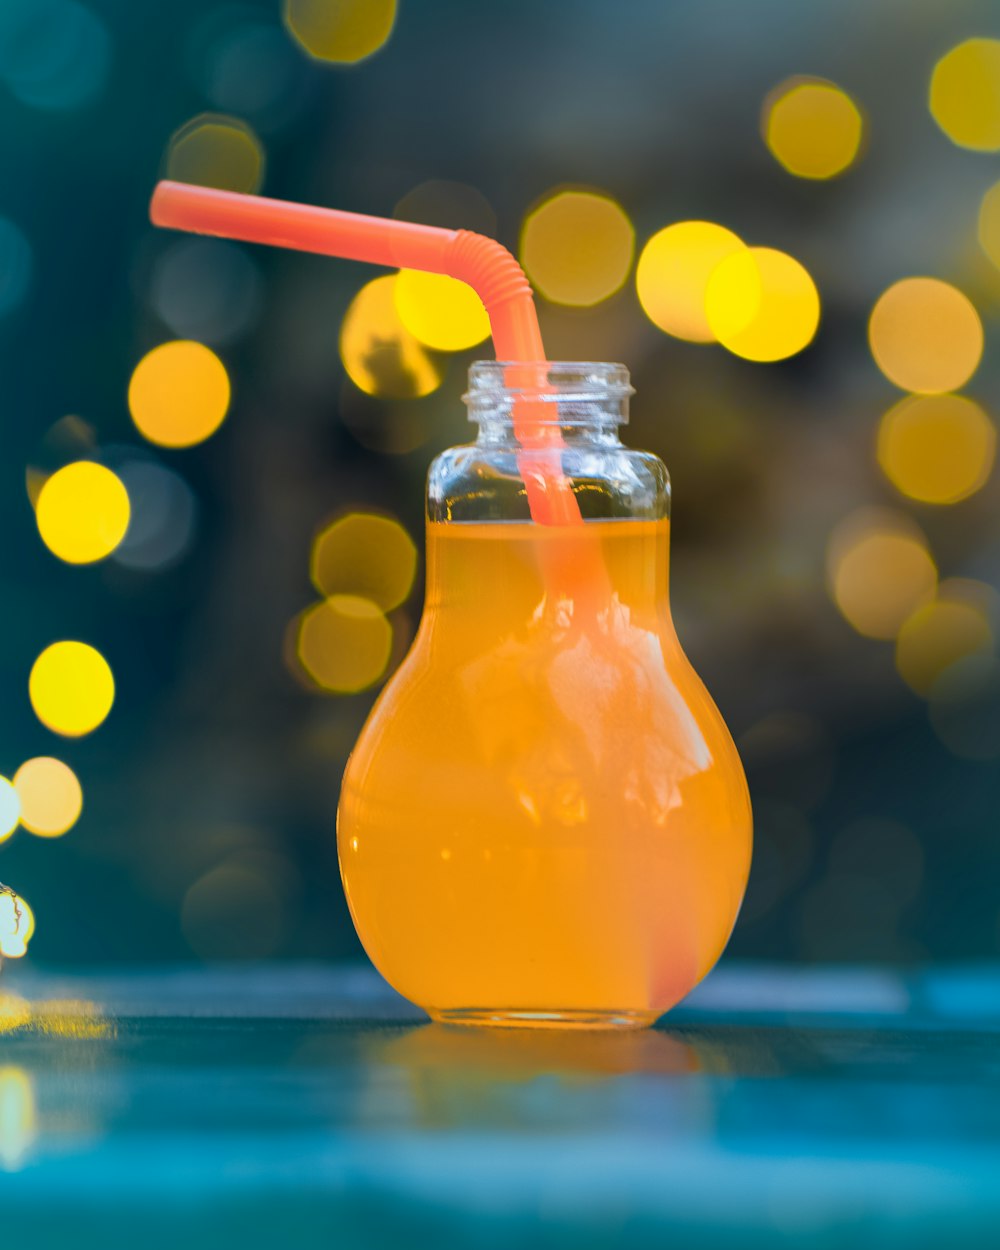 un vaso de zumo de naranja con una pajita